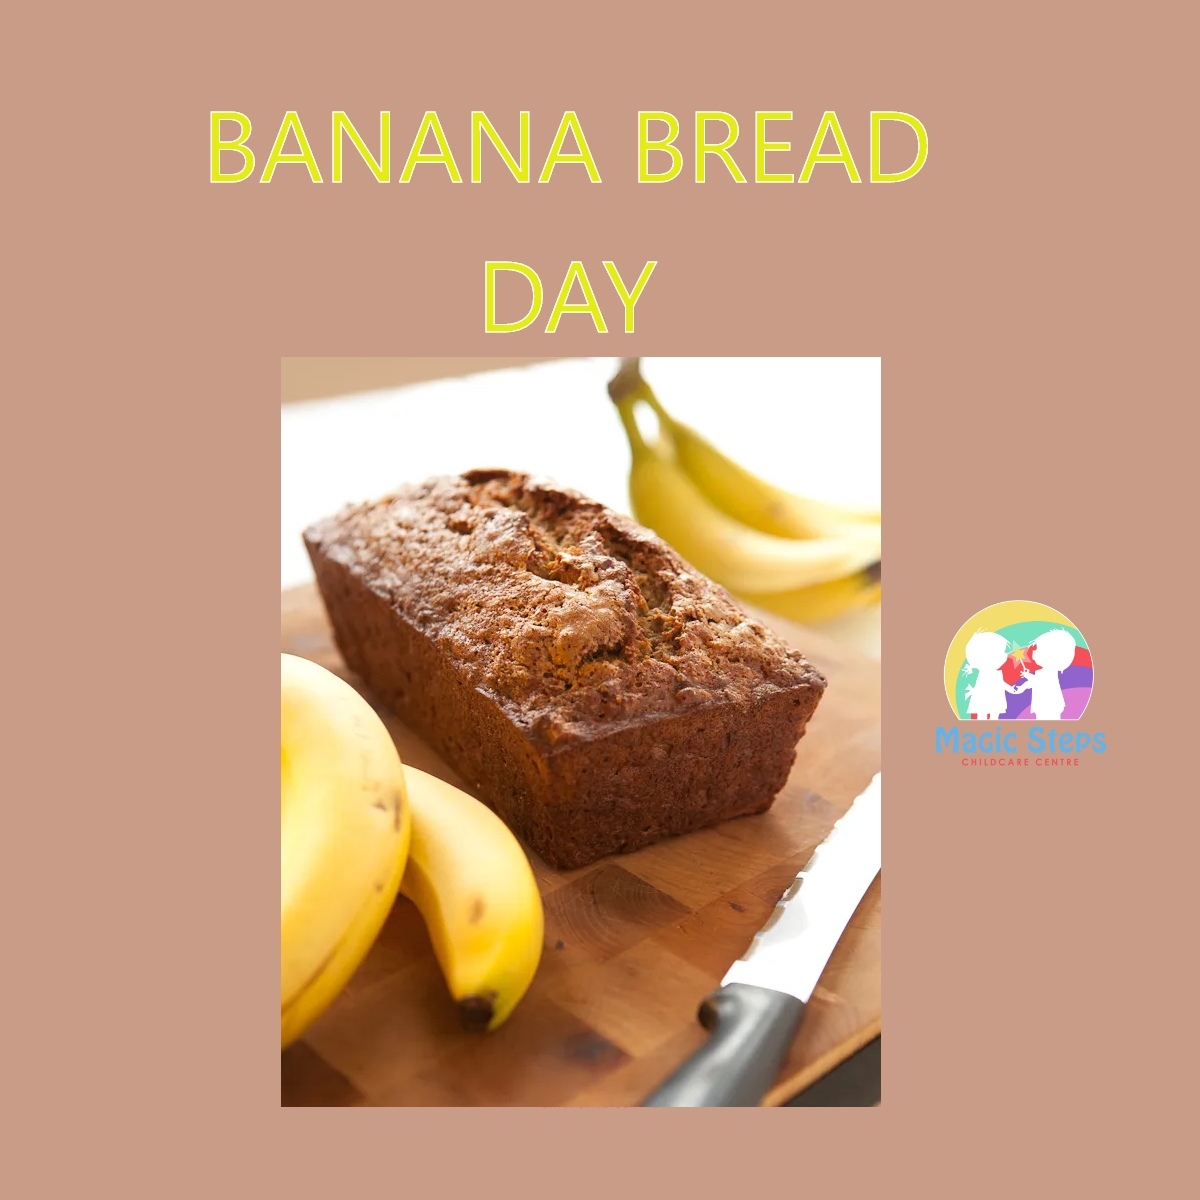 Banana Bread Day- Tuesday 8th February